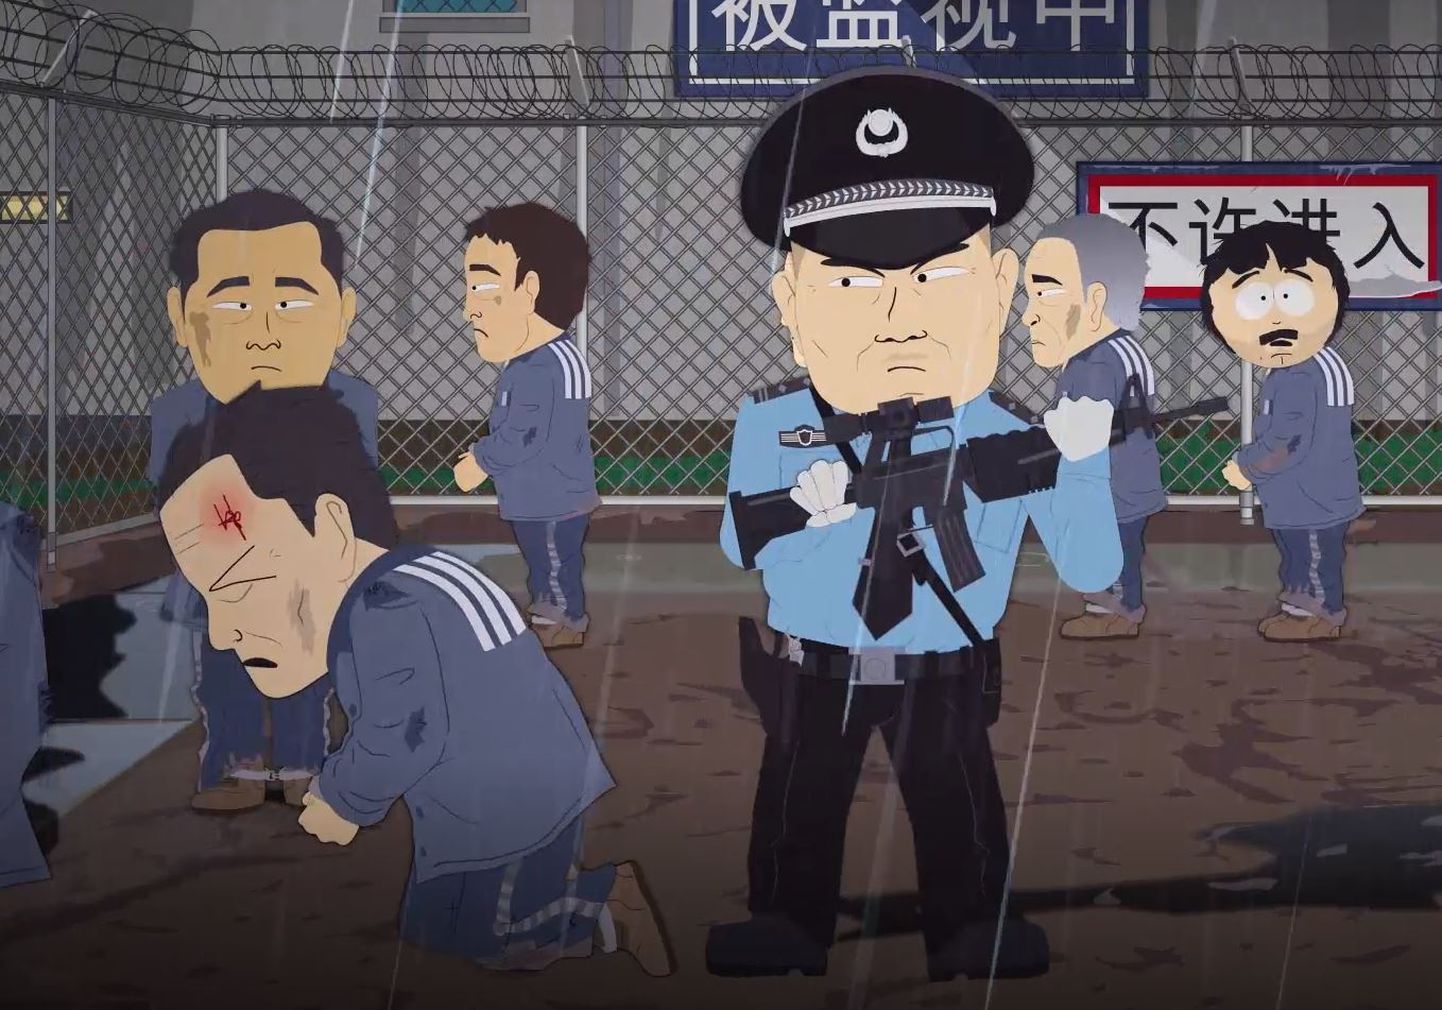 Hiina keelustas tuntud USA joonissarja South Park.